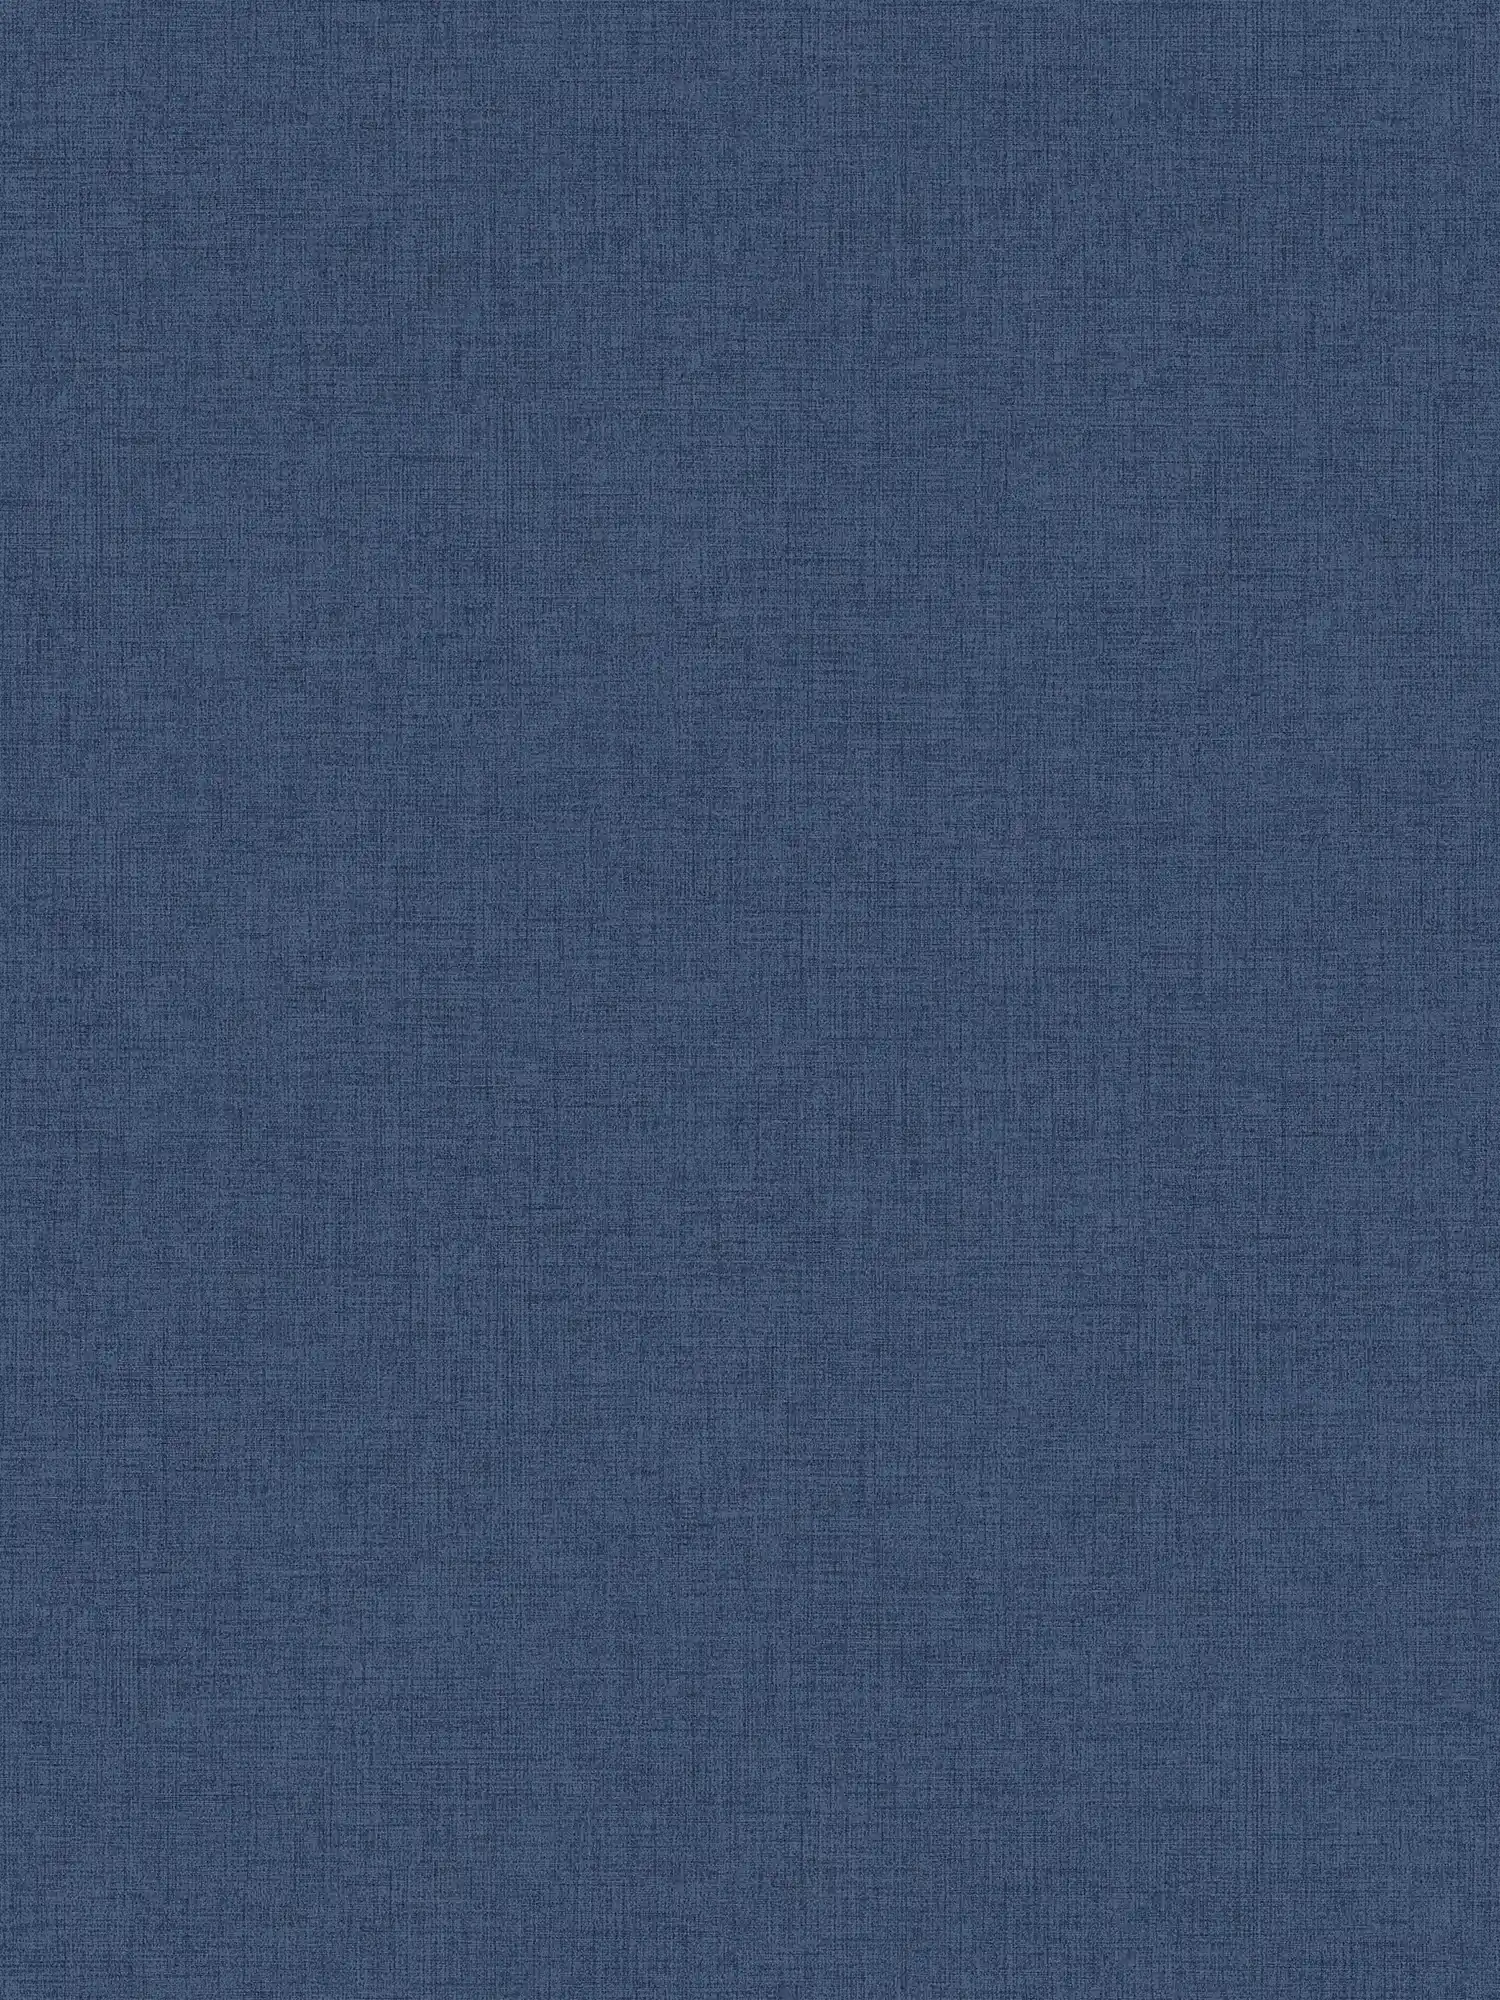 Marineblauw behang met linnen look, Navy - Blauw
